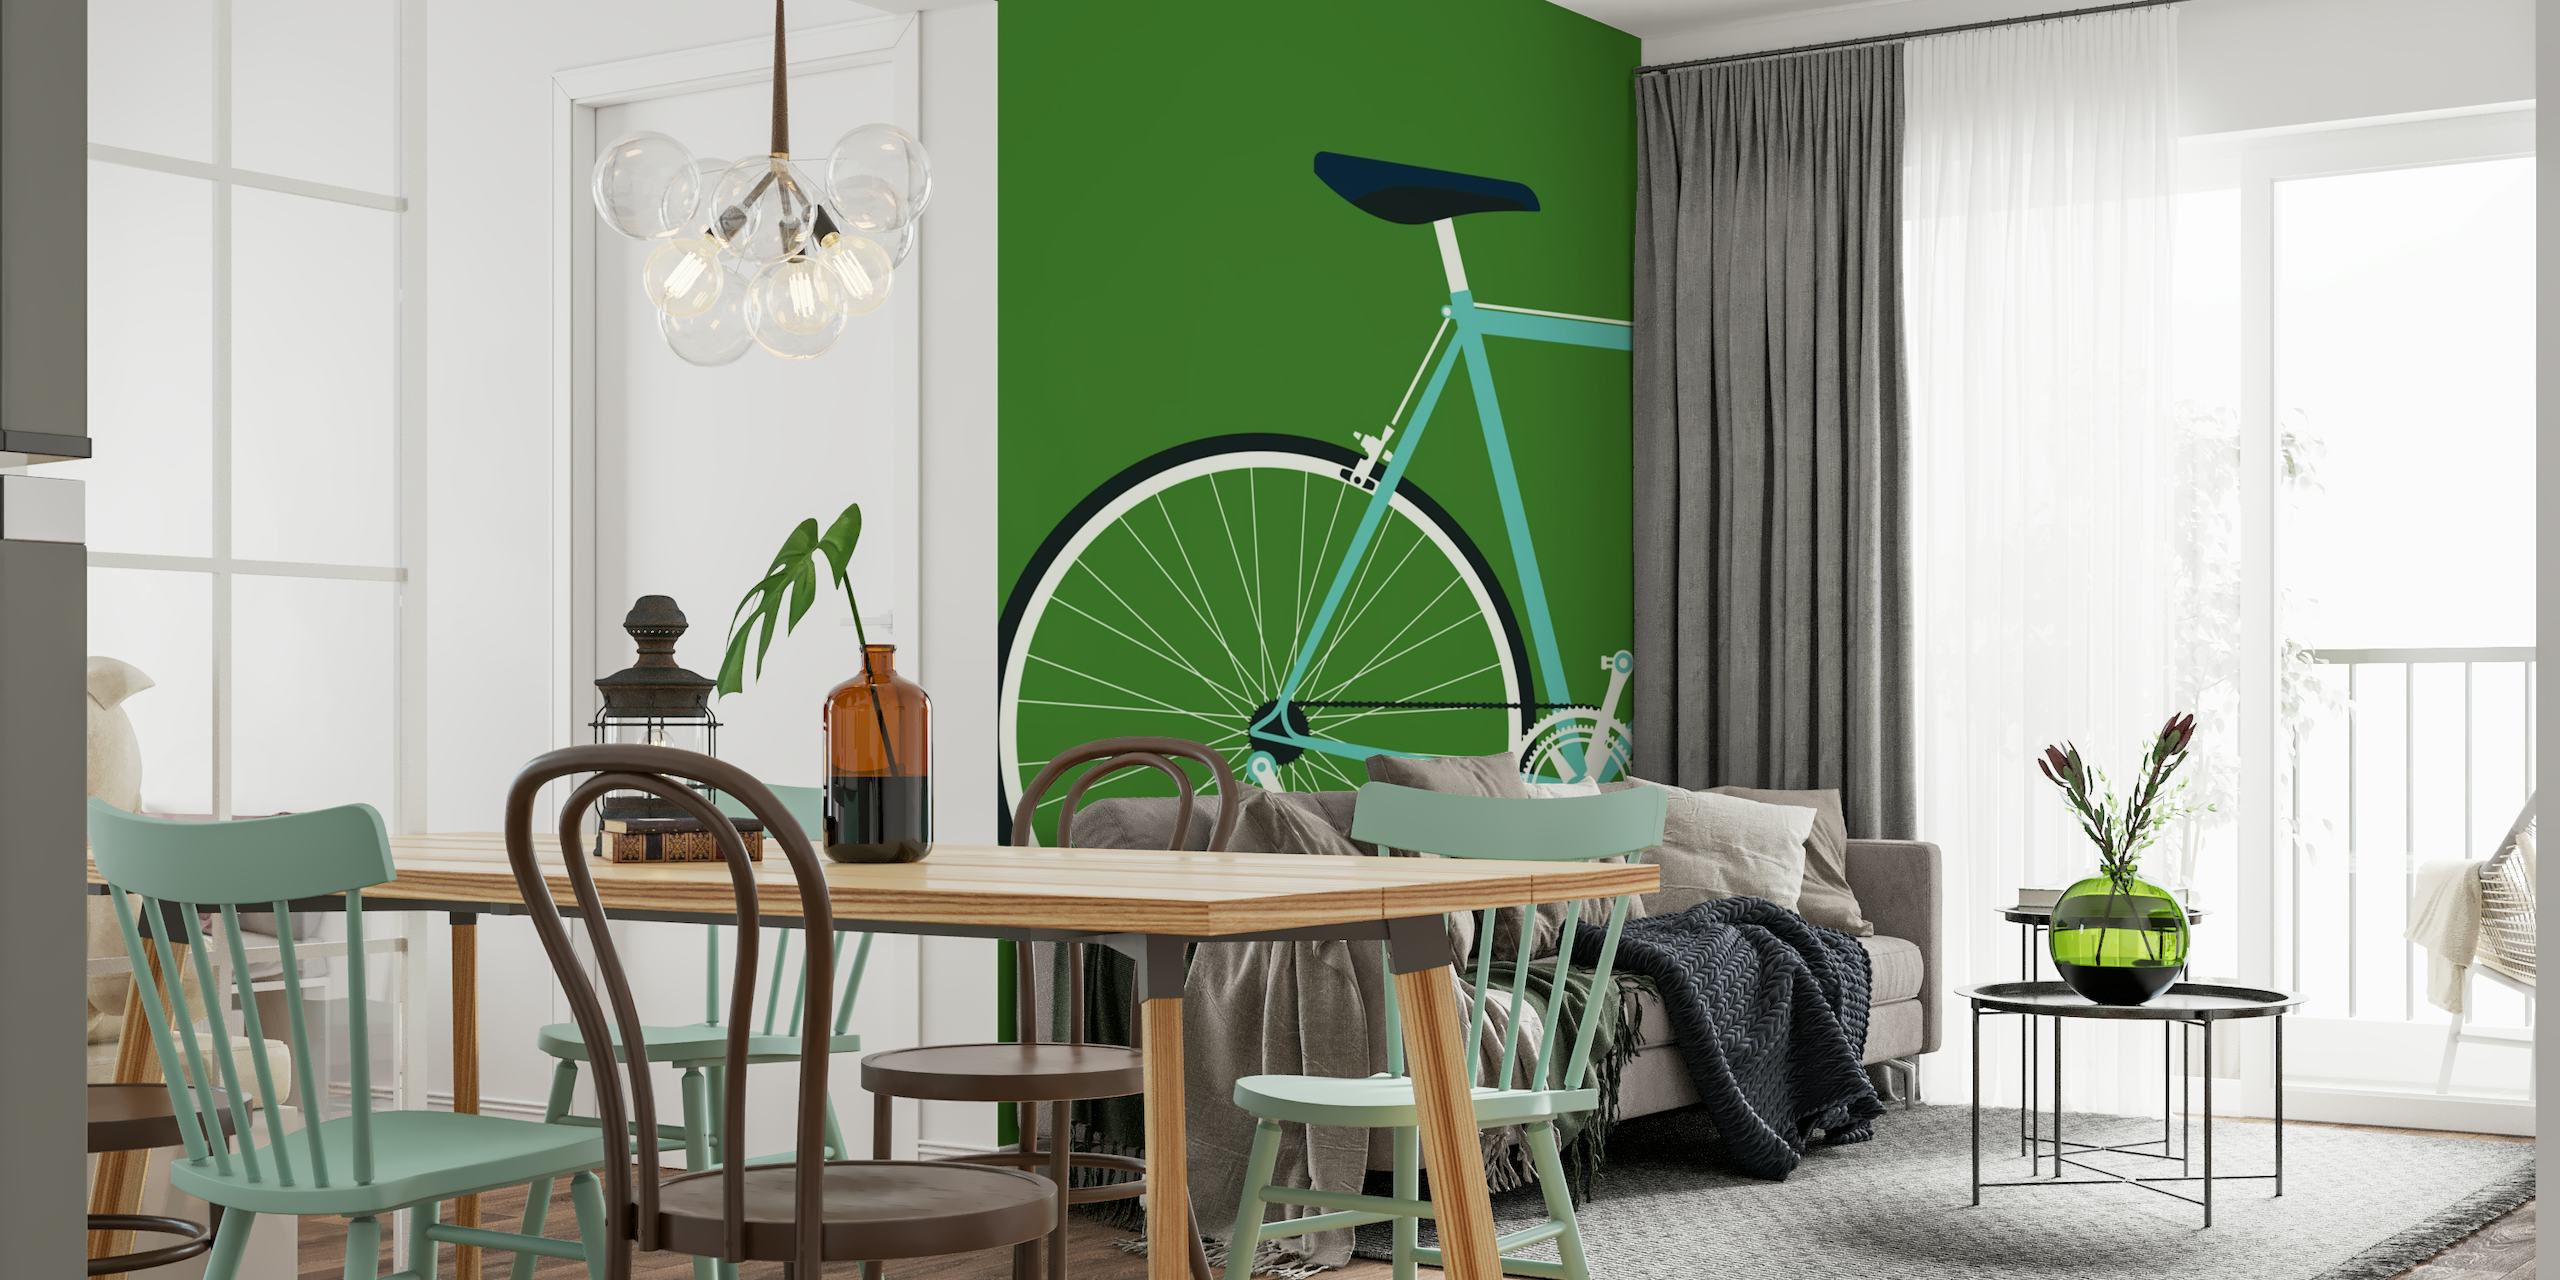 Murale arrière Bianchi représentant une silhouette de vélo stylisée sur fond vert